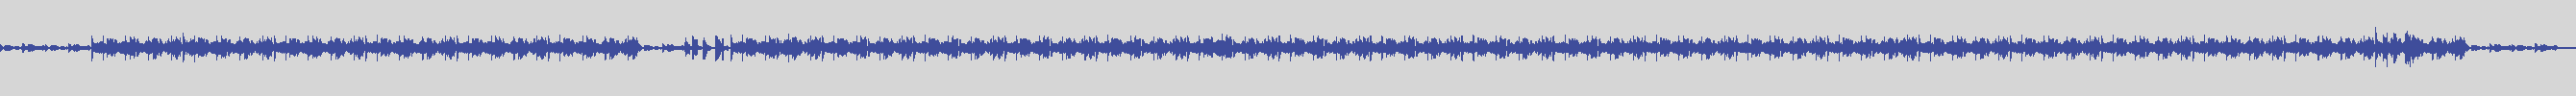 noclouds_chillout [NOC096] Matt Lovers - Analogamente [Original Mix] audio wave form